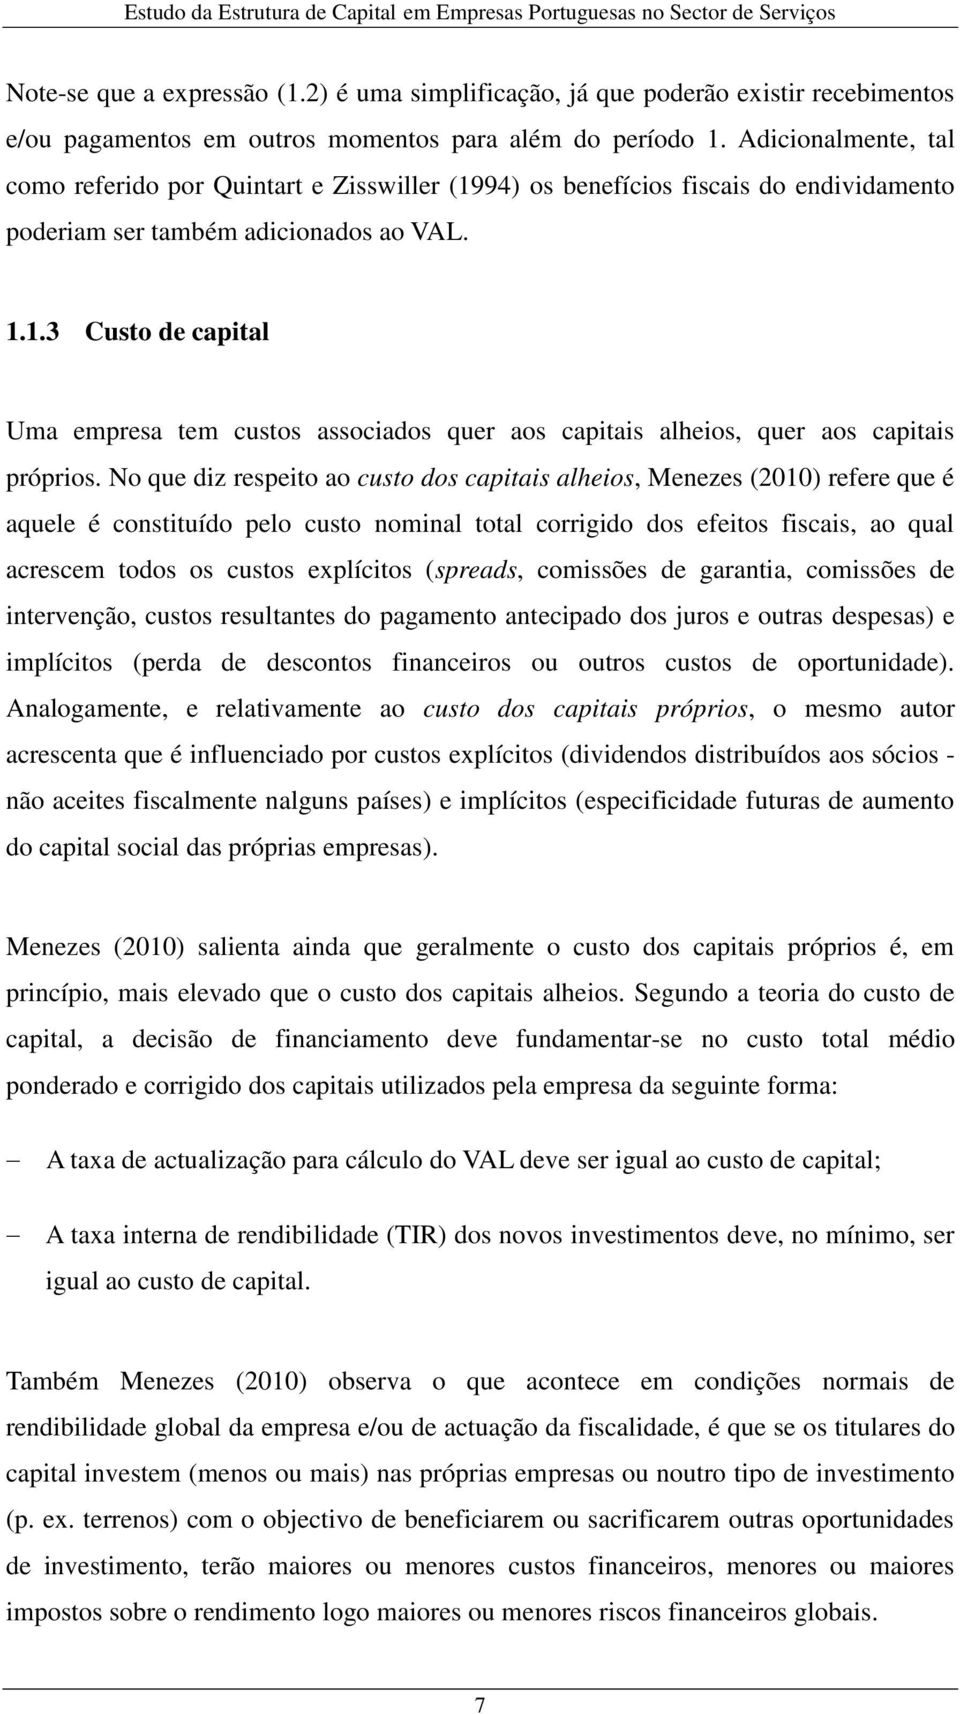 No que diz respeito ao custo dos capitais alheios, Menezes (2010) refere que é aquele é constituído pelo custo nominal total corrigido dos efeitos fiscais, ao qual acrescem todos os custos explícitos